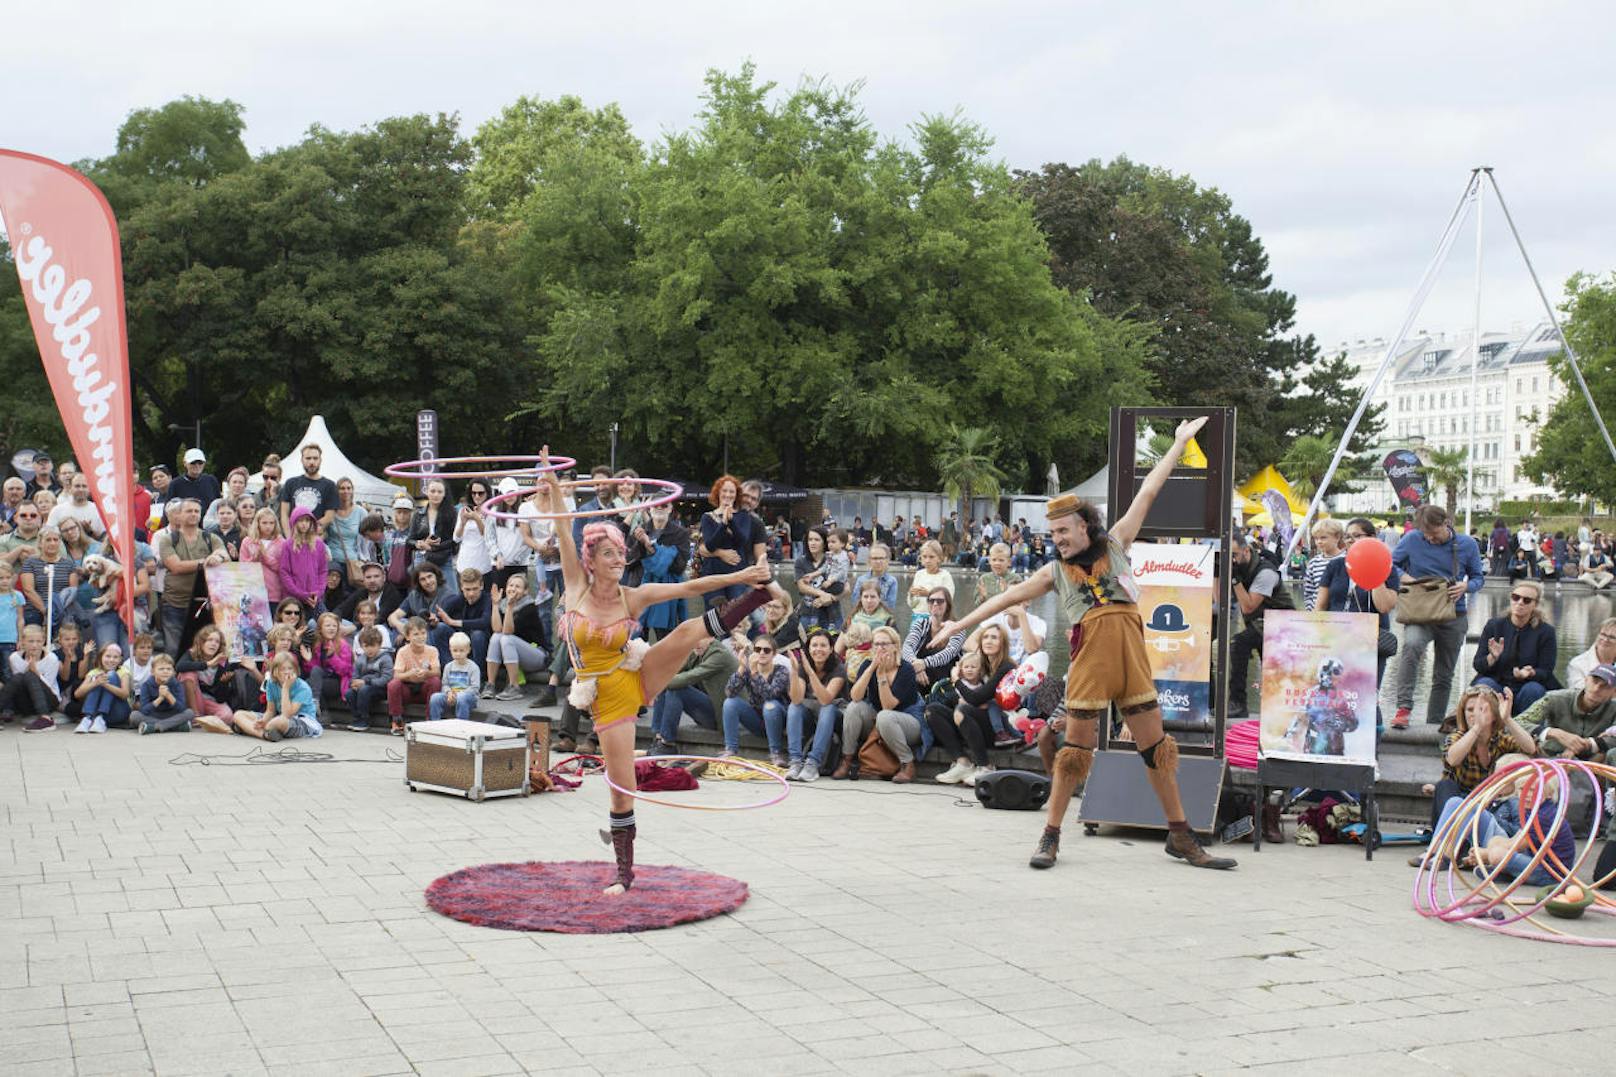 Die Clown-Akkrobaten aus Uruguay fesseln mit zirkusreifen Tricks, die die Lachmuskeln in Schwung versetzen.